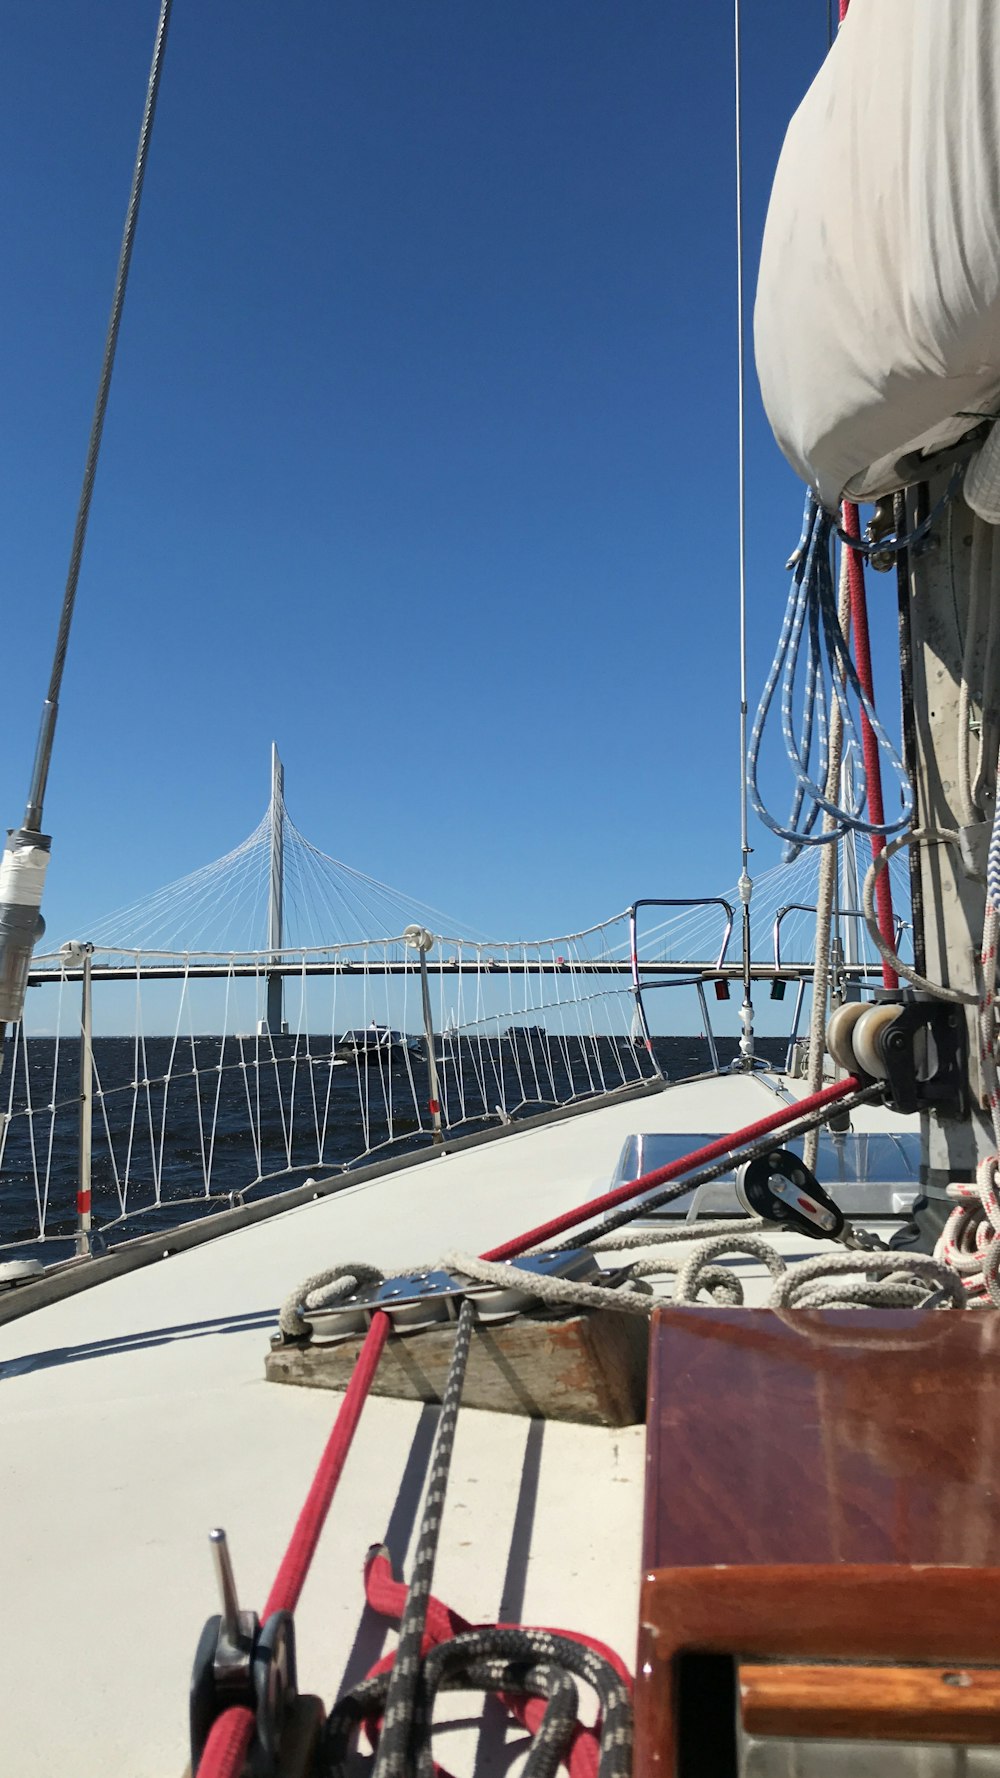 Una vista de un puente desde un barco en el agua